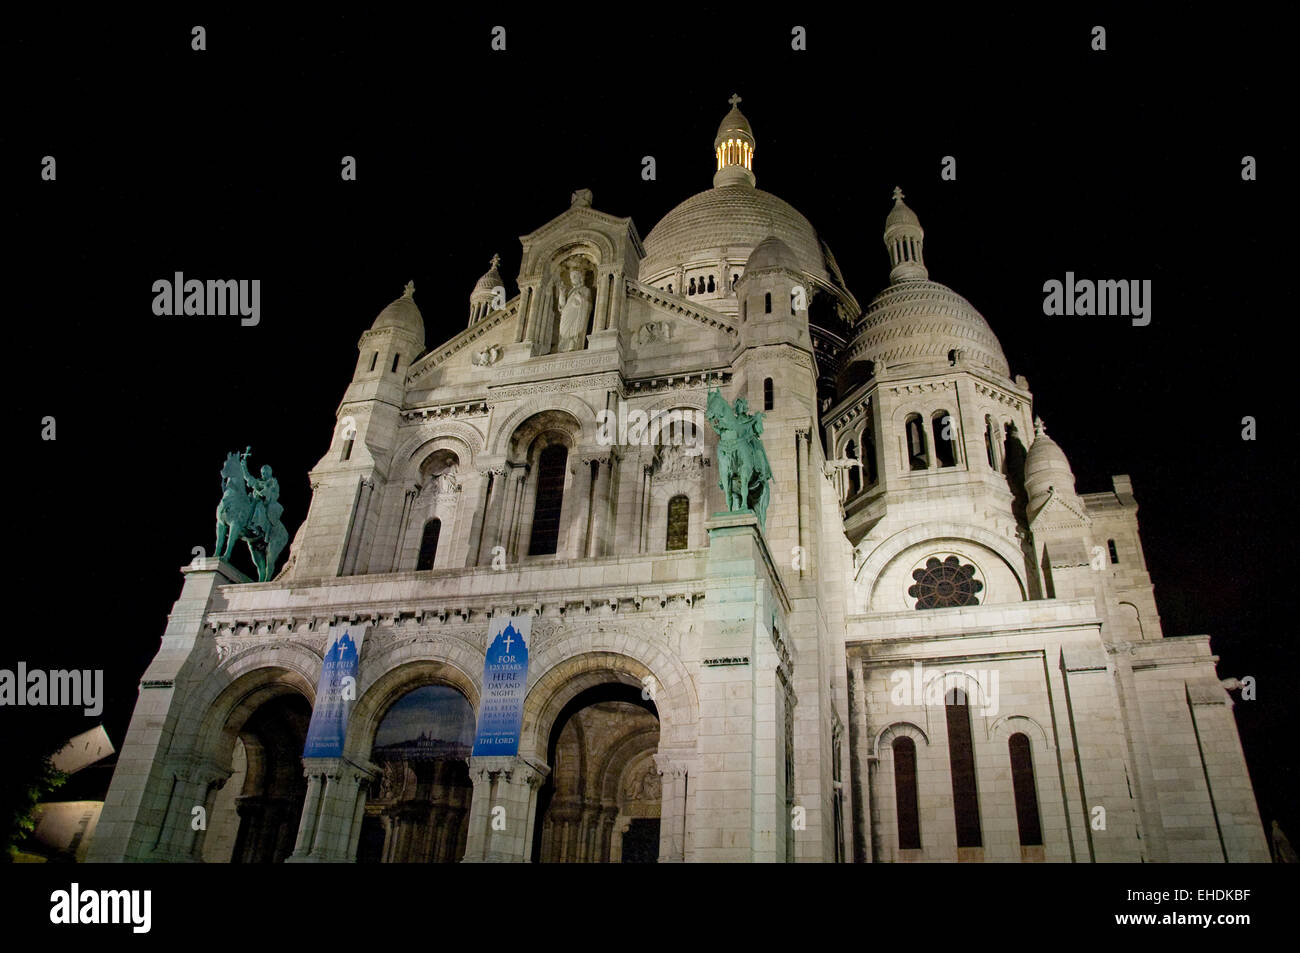 Photo de nuit de Sacre Coeur in Paris France Banque D'Images